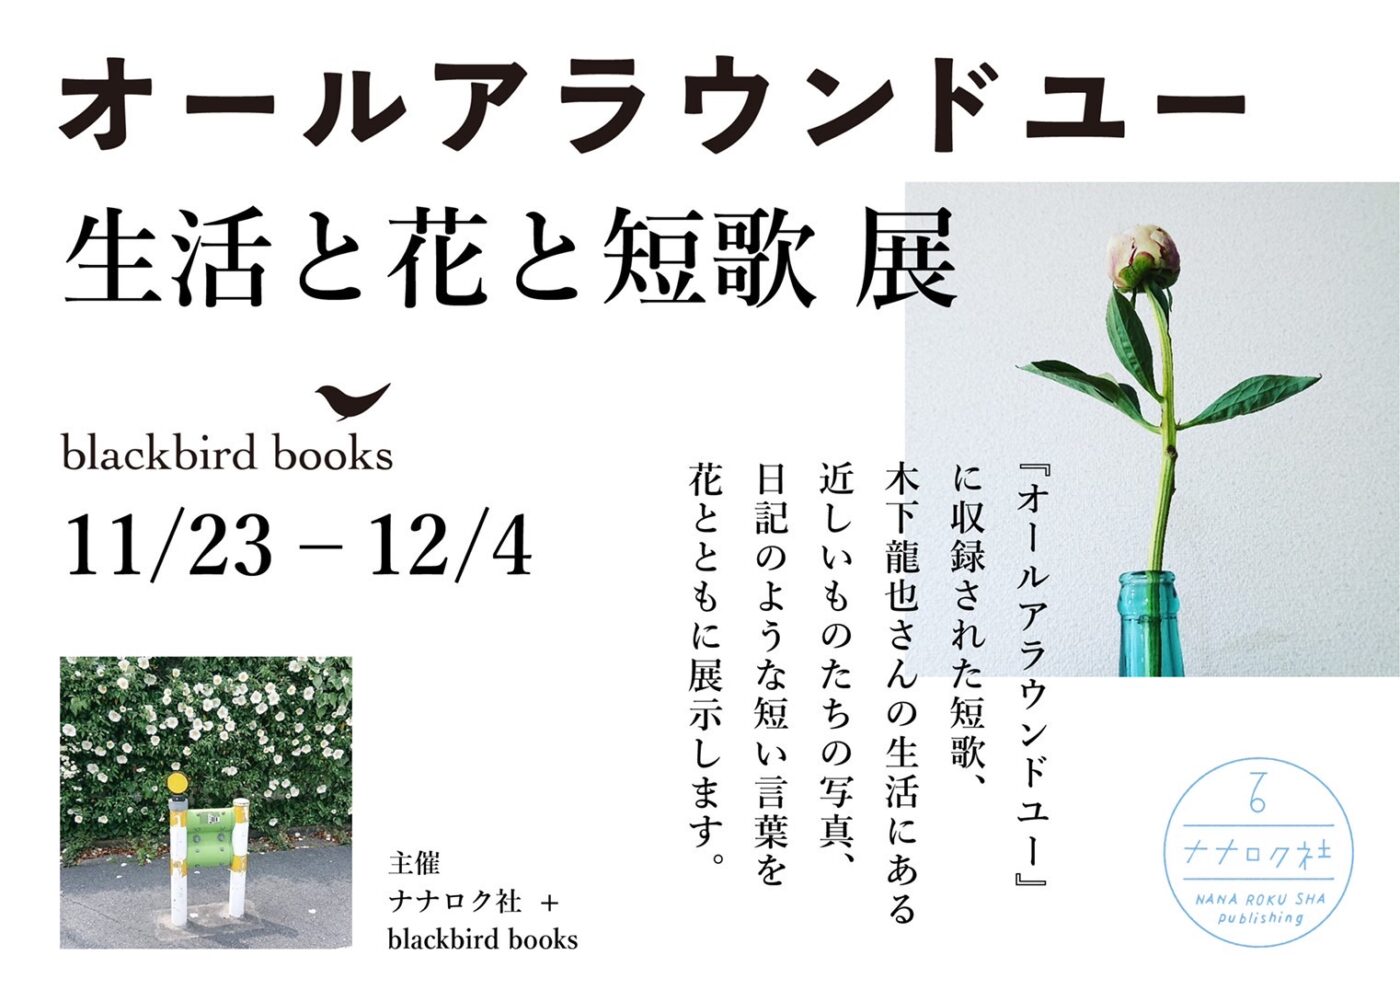 歌人・木下龍也の第3歌集『オールアラウンドユー』の発売記念展、blackbird booksにて開催。短歌や本人撮影の写真などを花とともに展示。